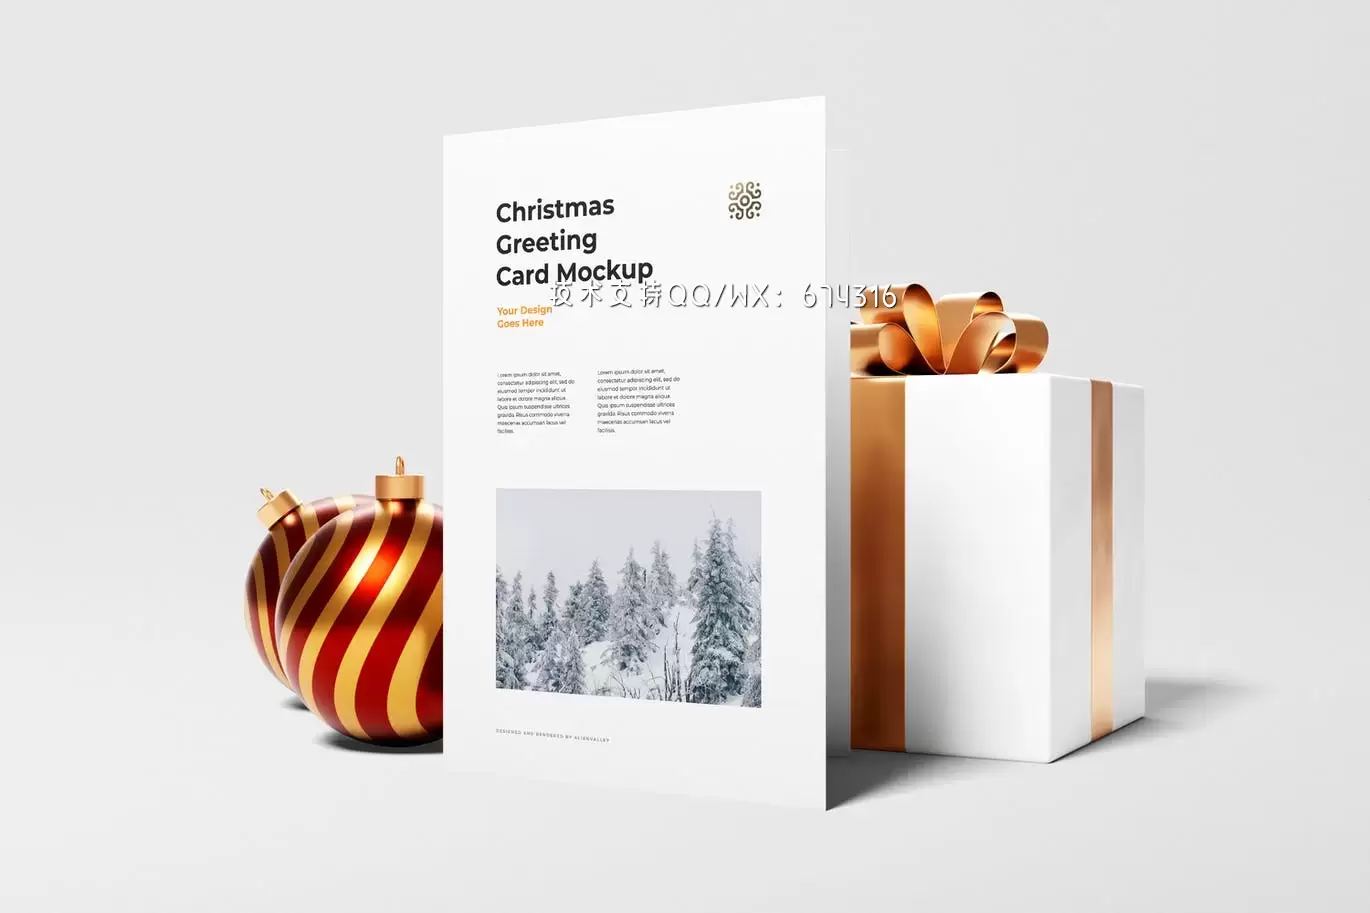 Christmas 卡片设计展示样机 (PSD)免费下载